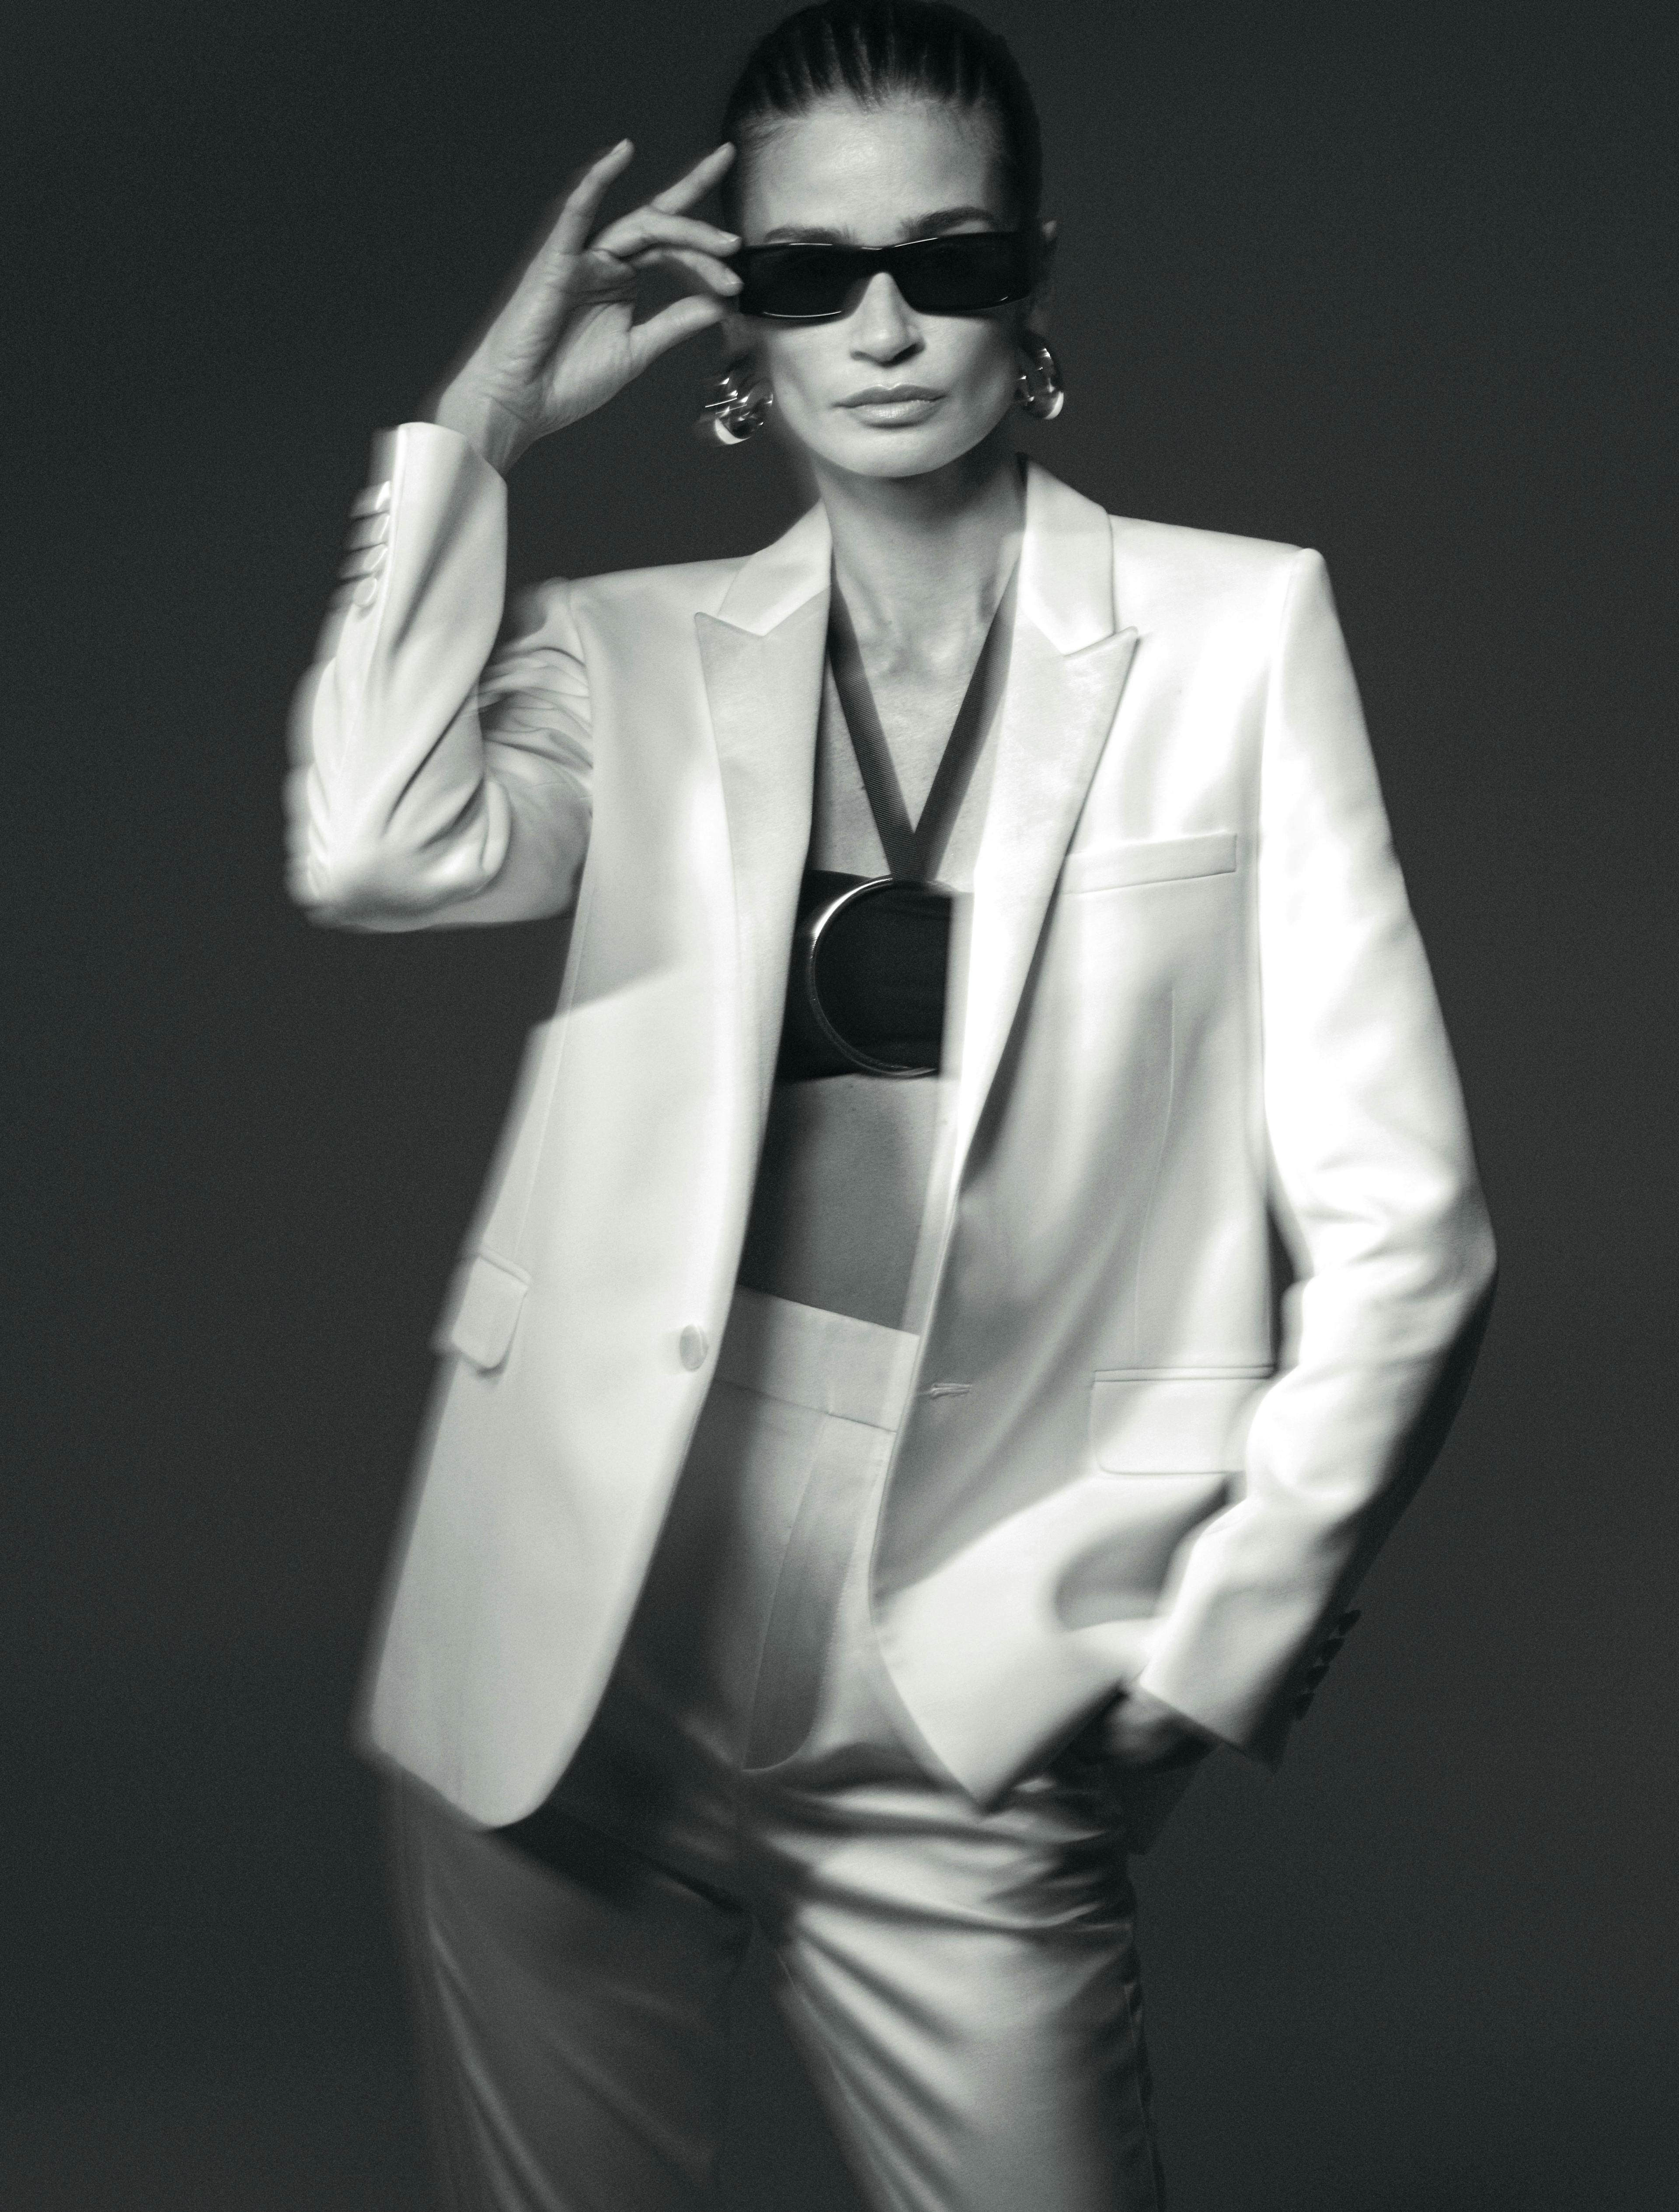 clothing apparel suit coat overcoat sunglasses accessories person tie female